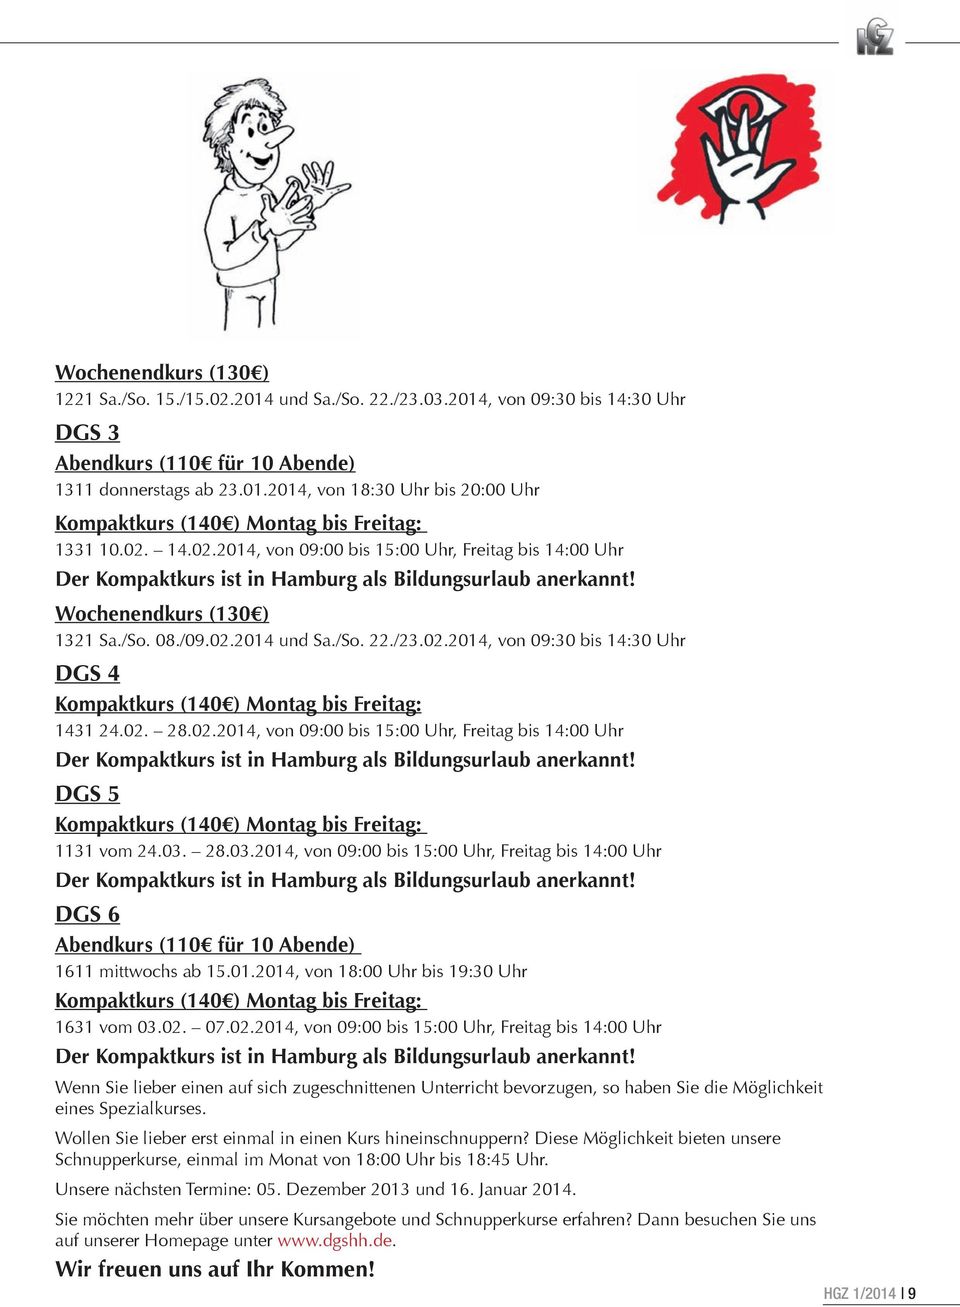 02. 28.02.2014, von 09:00 bis 15:00 Uhr, Freitag bis 14:00 Uhr Der Kompaktkurs ist in Hamburg als Bildungsurlaub anerkannt! DGS 5 Kompaktkurs (140 ) Montag bis Freitag: 1131 vom 24.03.